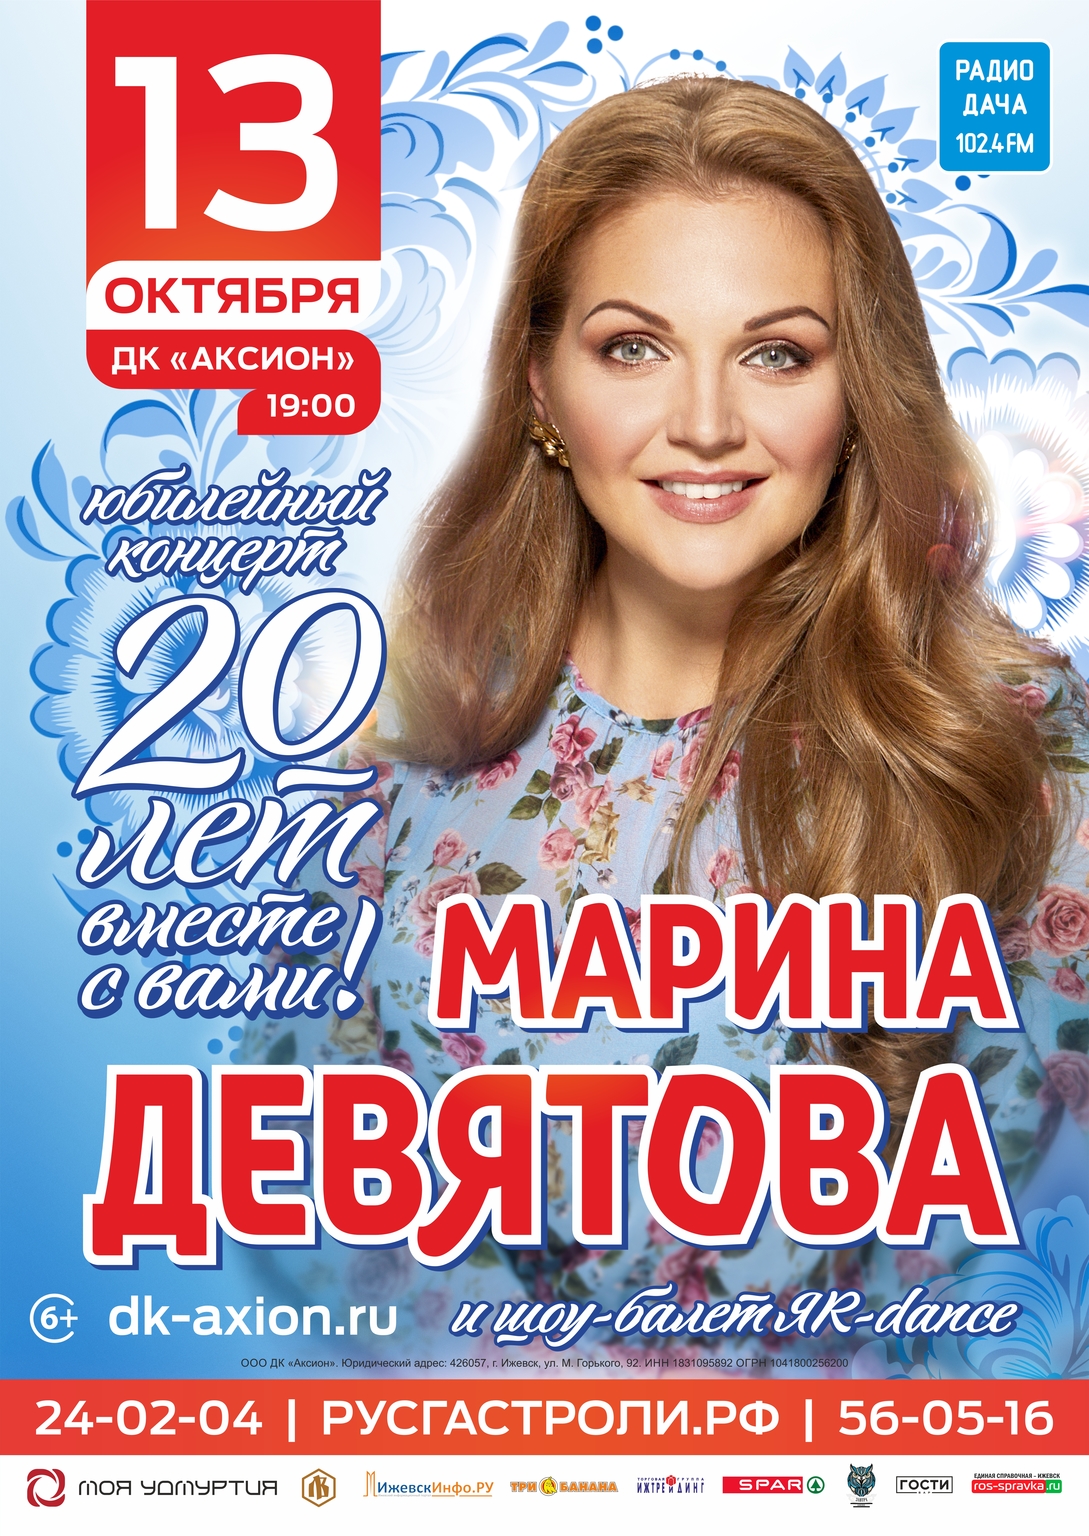 Концерт марины девятовой купить. Концерт Марины Девятовой в Ульяновске.